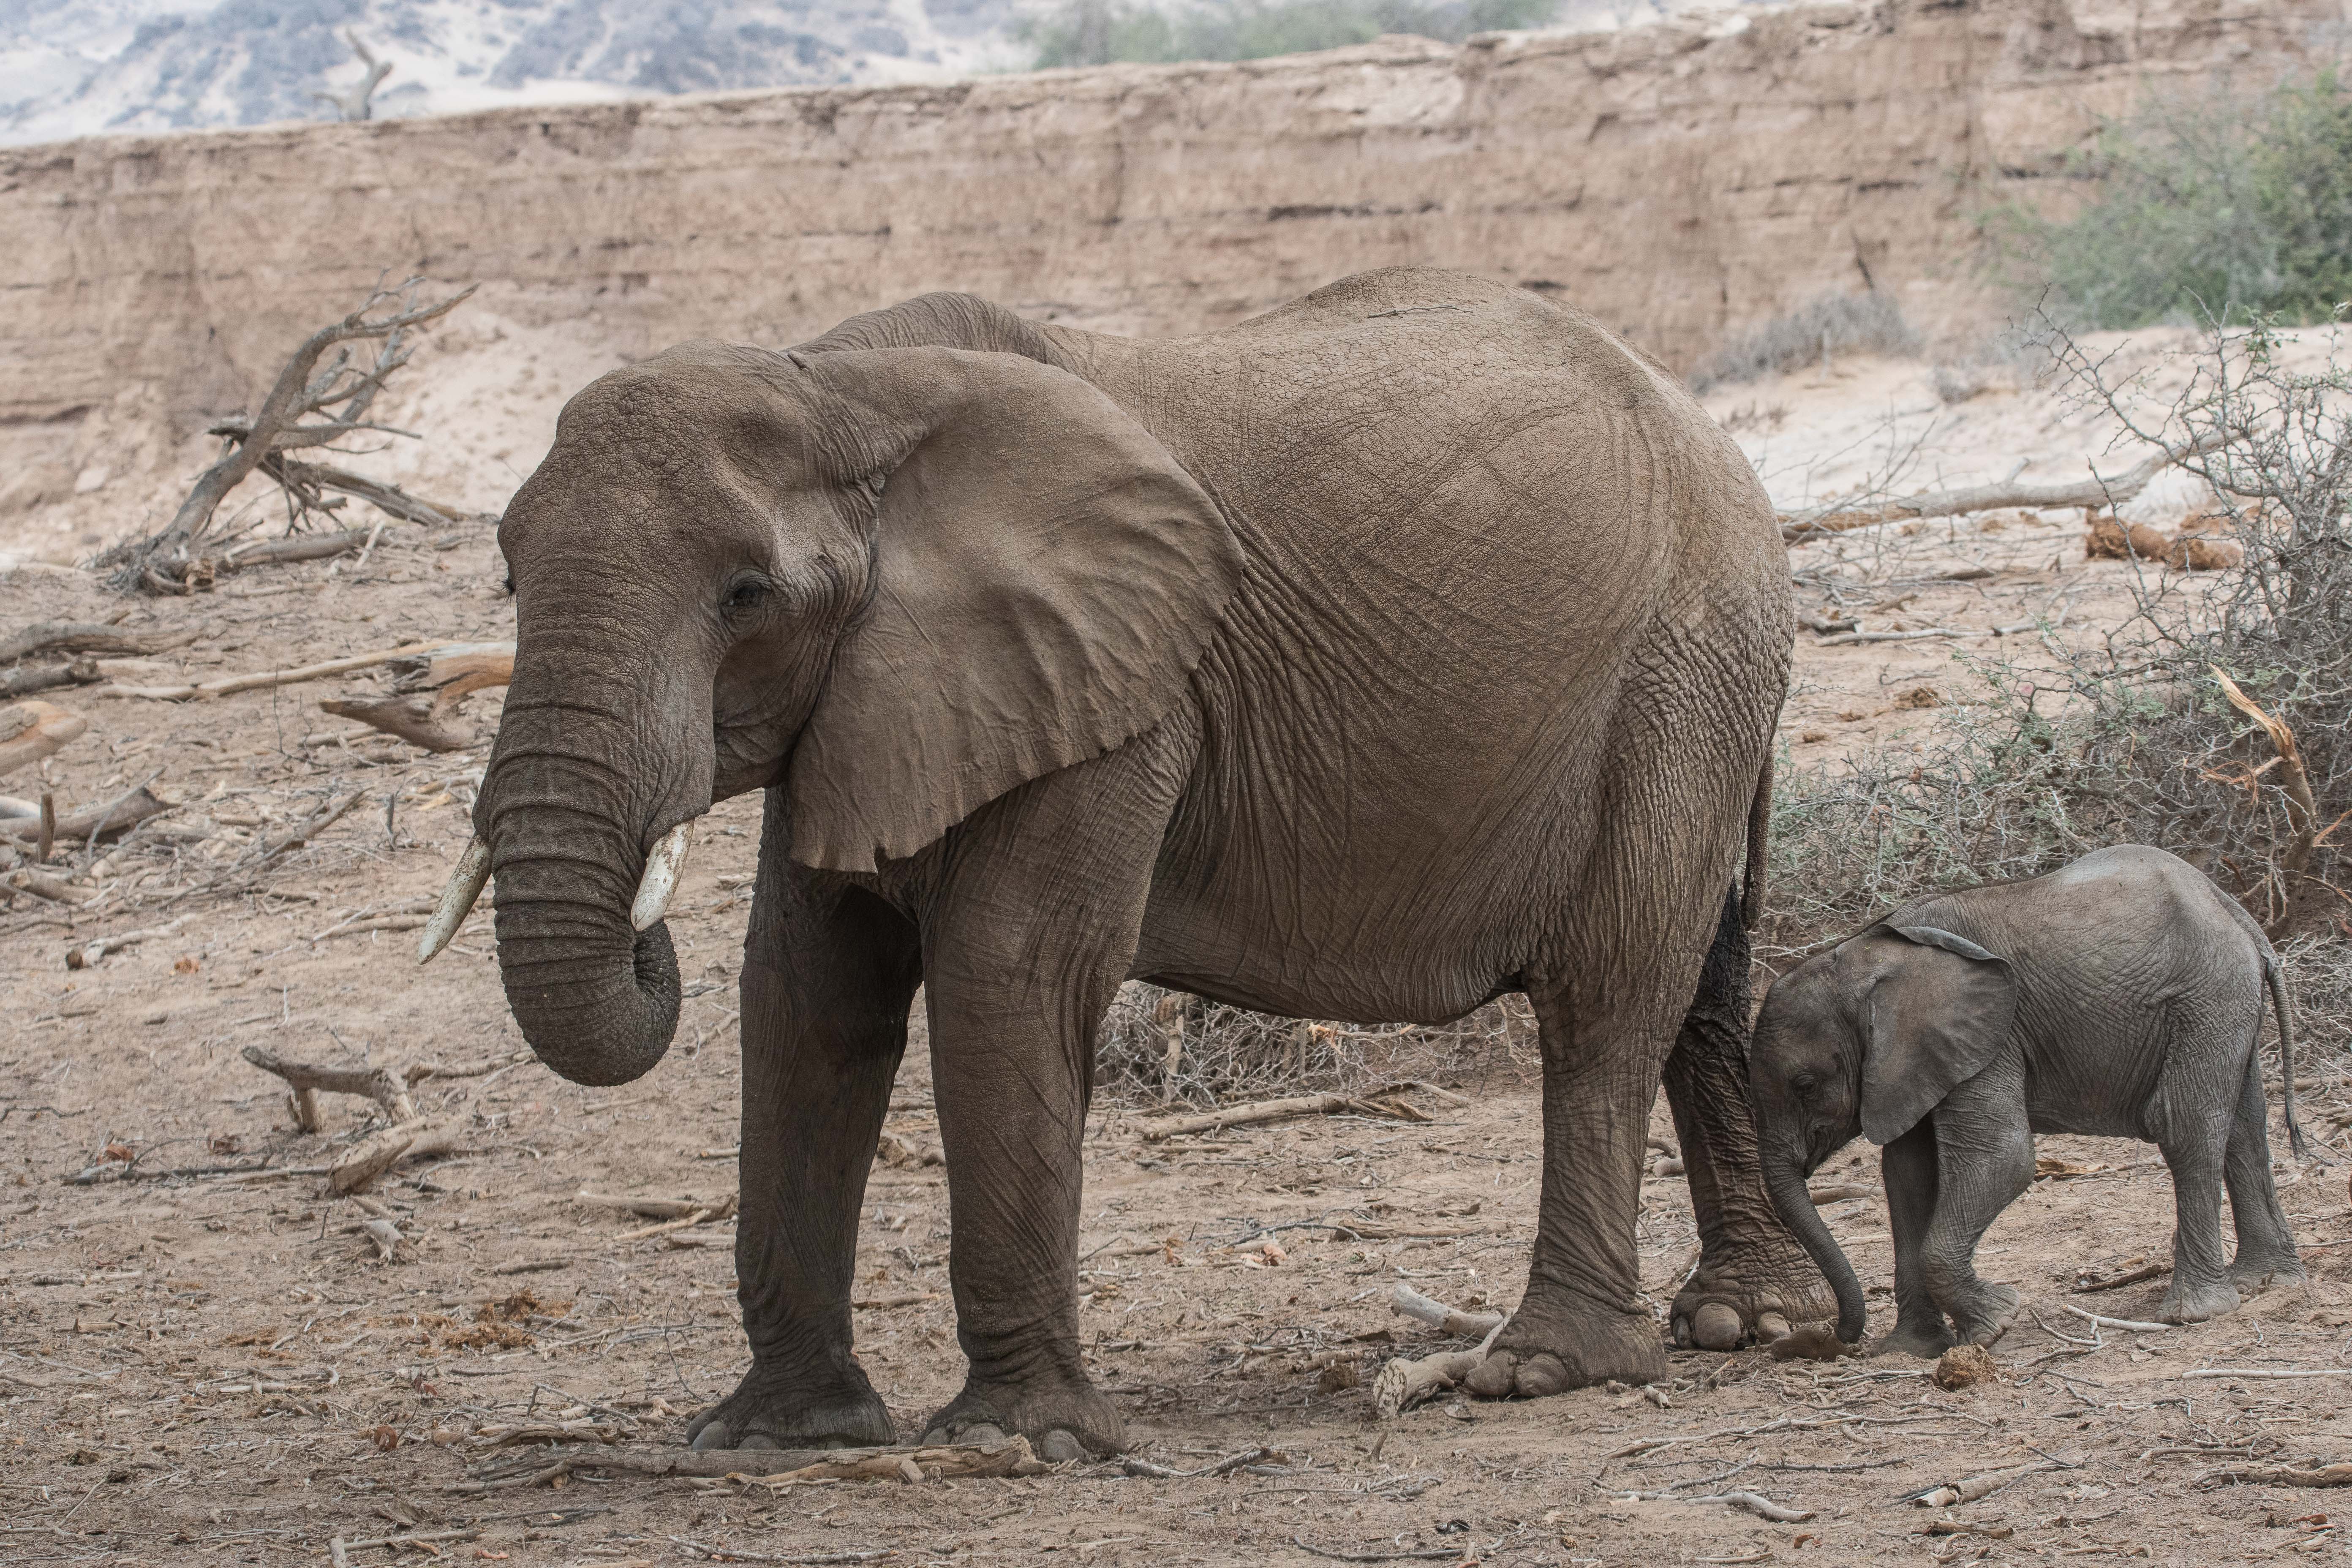 Eléphants du désert (Desert-adapted elephants, Loxodonta africana), femelle suivie de son éléphanteau, en quête de nourriture dans le lit de la rivière Hoanib alors à sec, Kaokoland, Région de Kunene, Namibie.